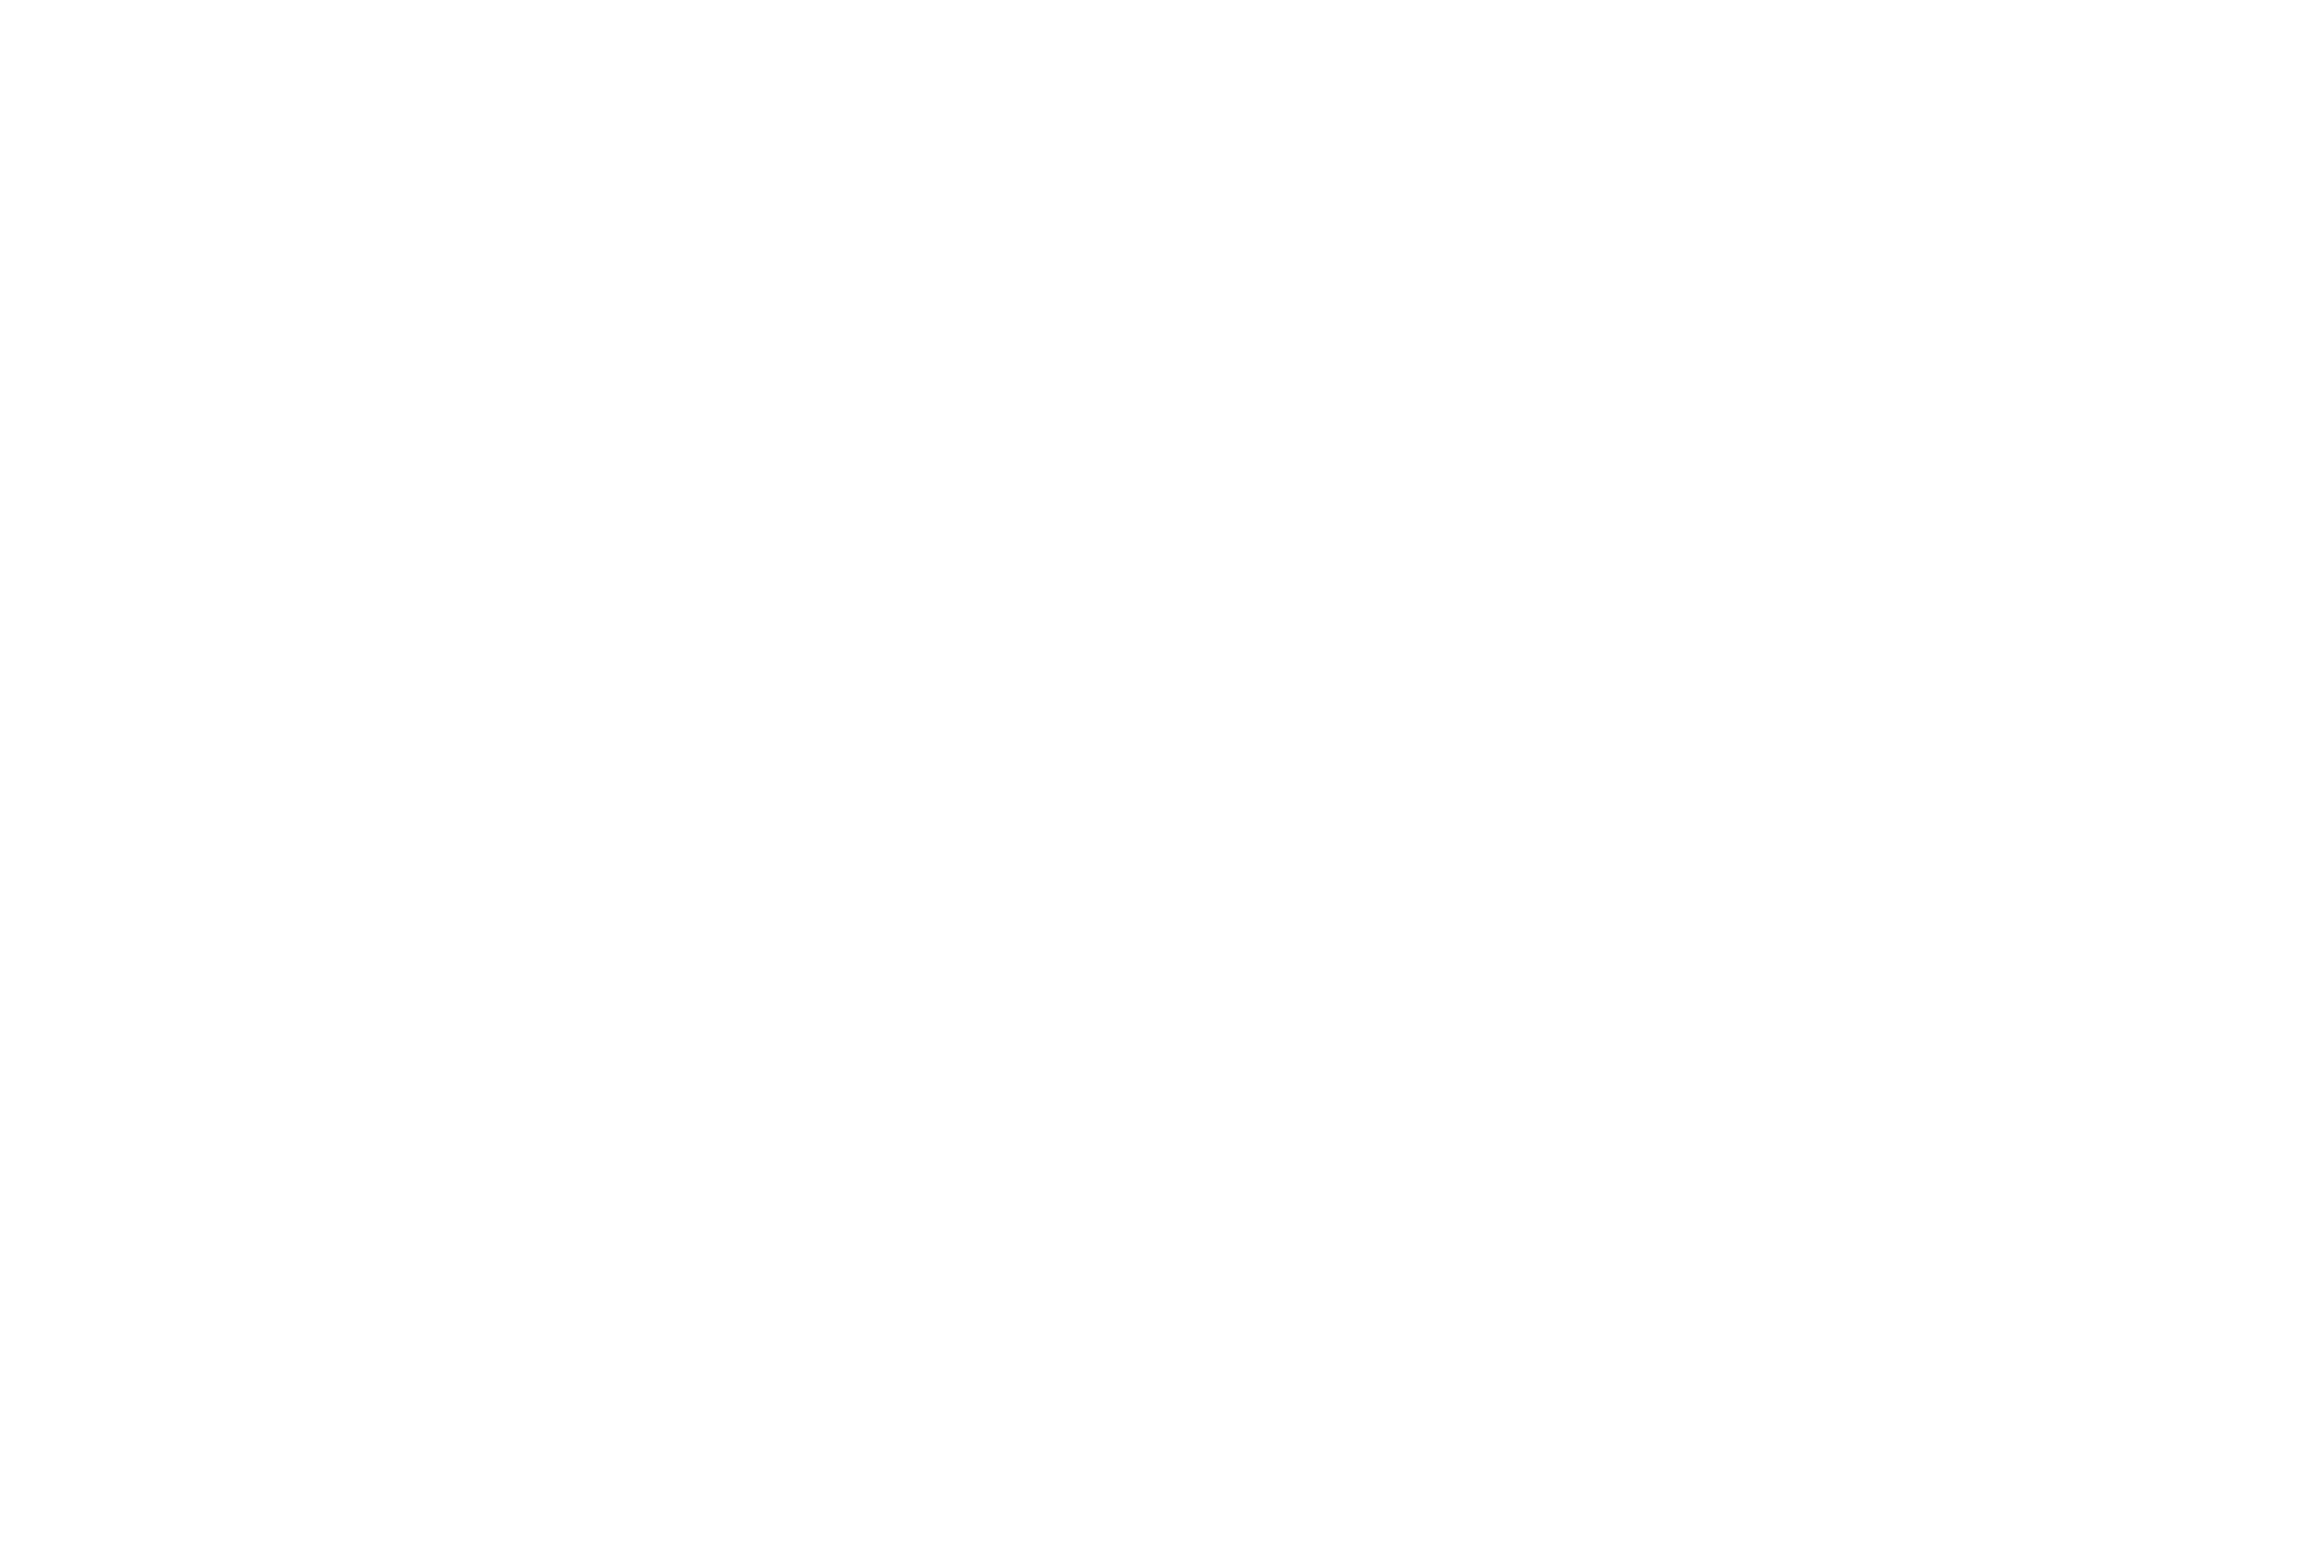 byNonStop